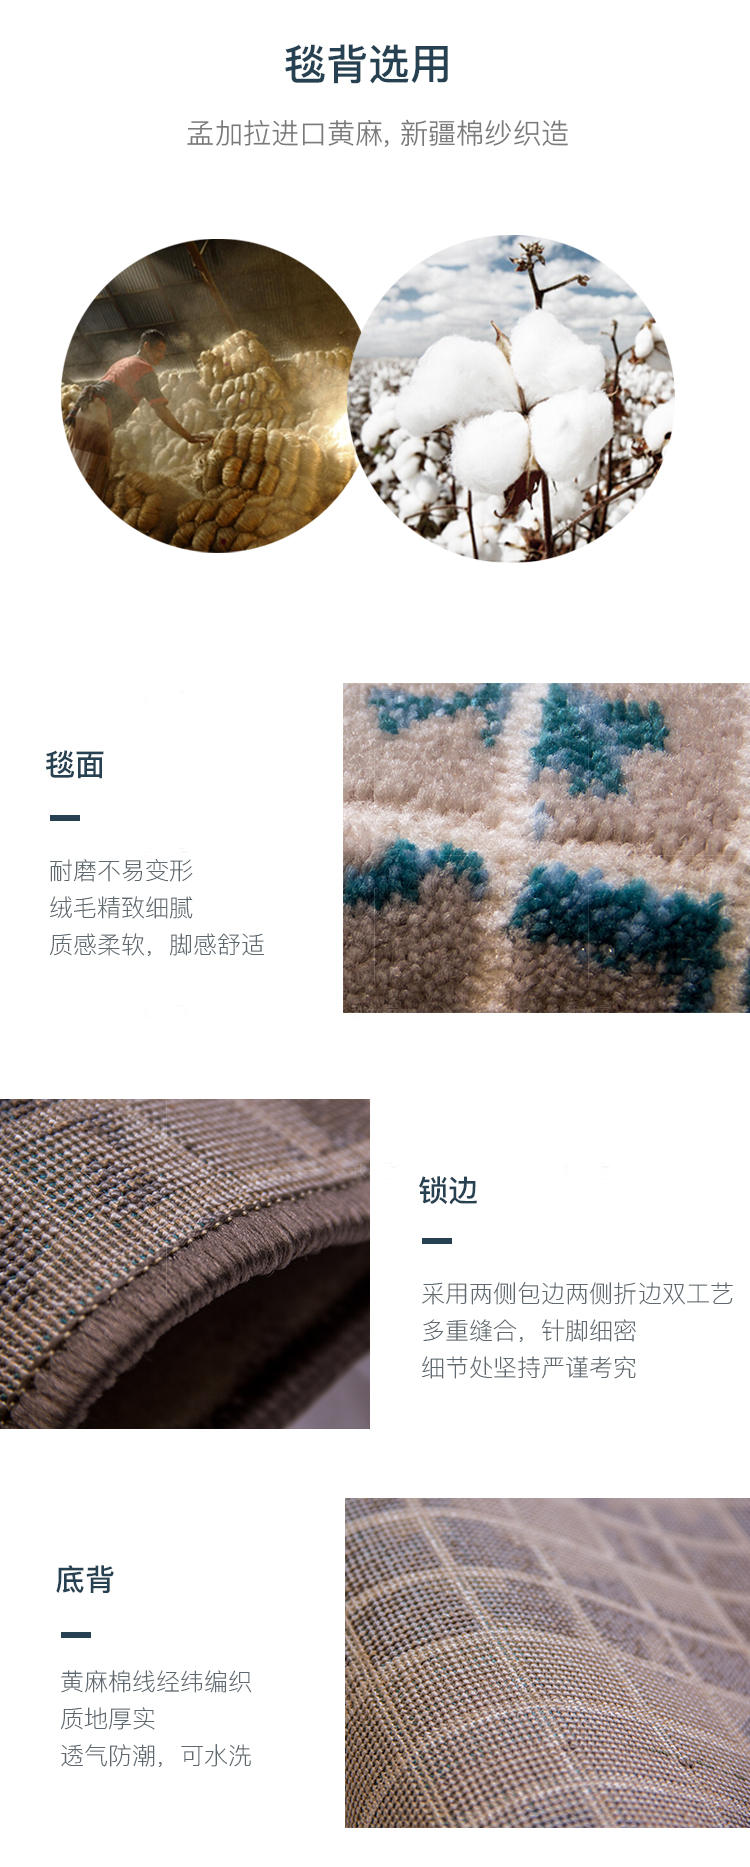 地毯系列现代风马赛克机织地毯的详细介绍